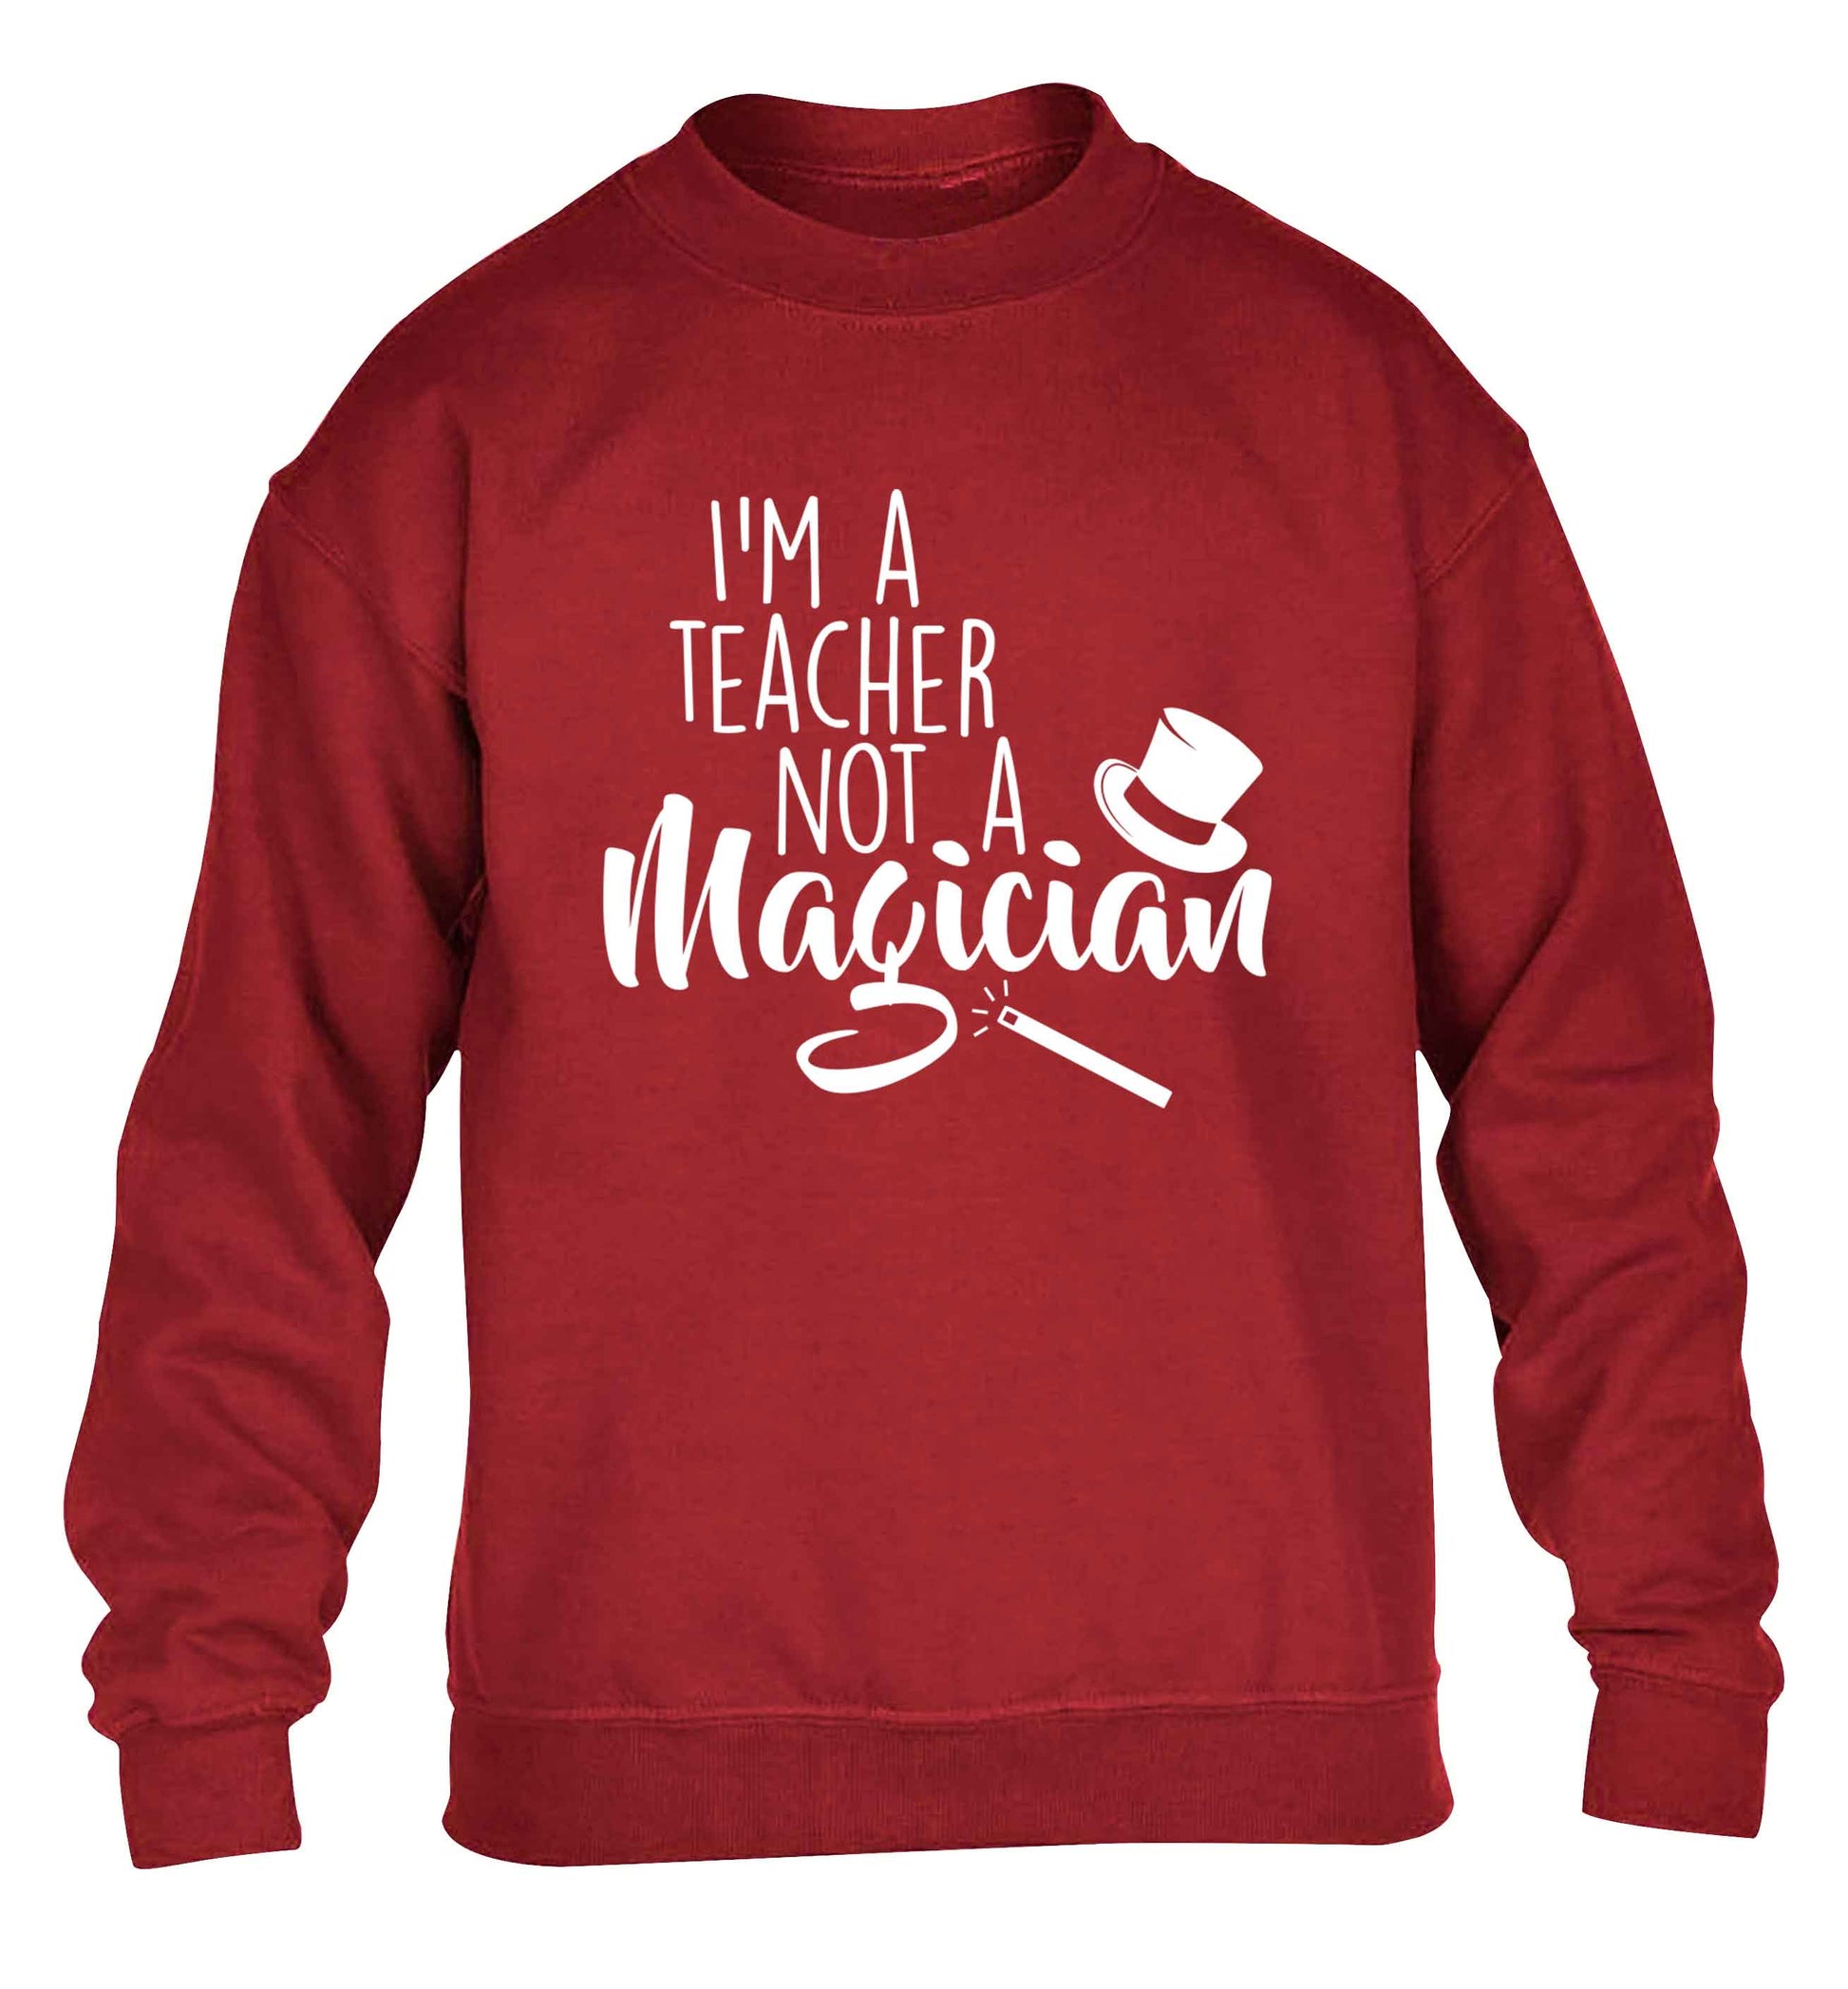 I'm a teacher not a magician children's grey sweater 12-13 Years